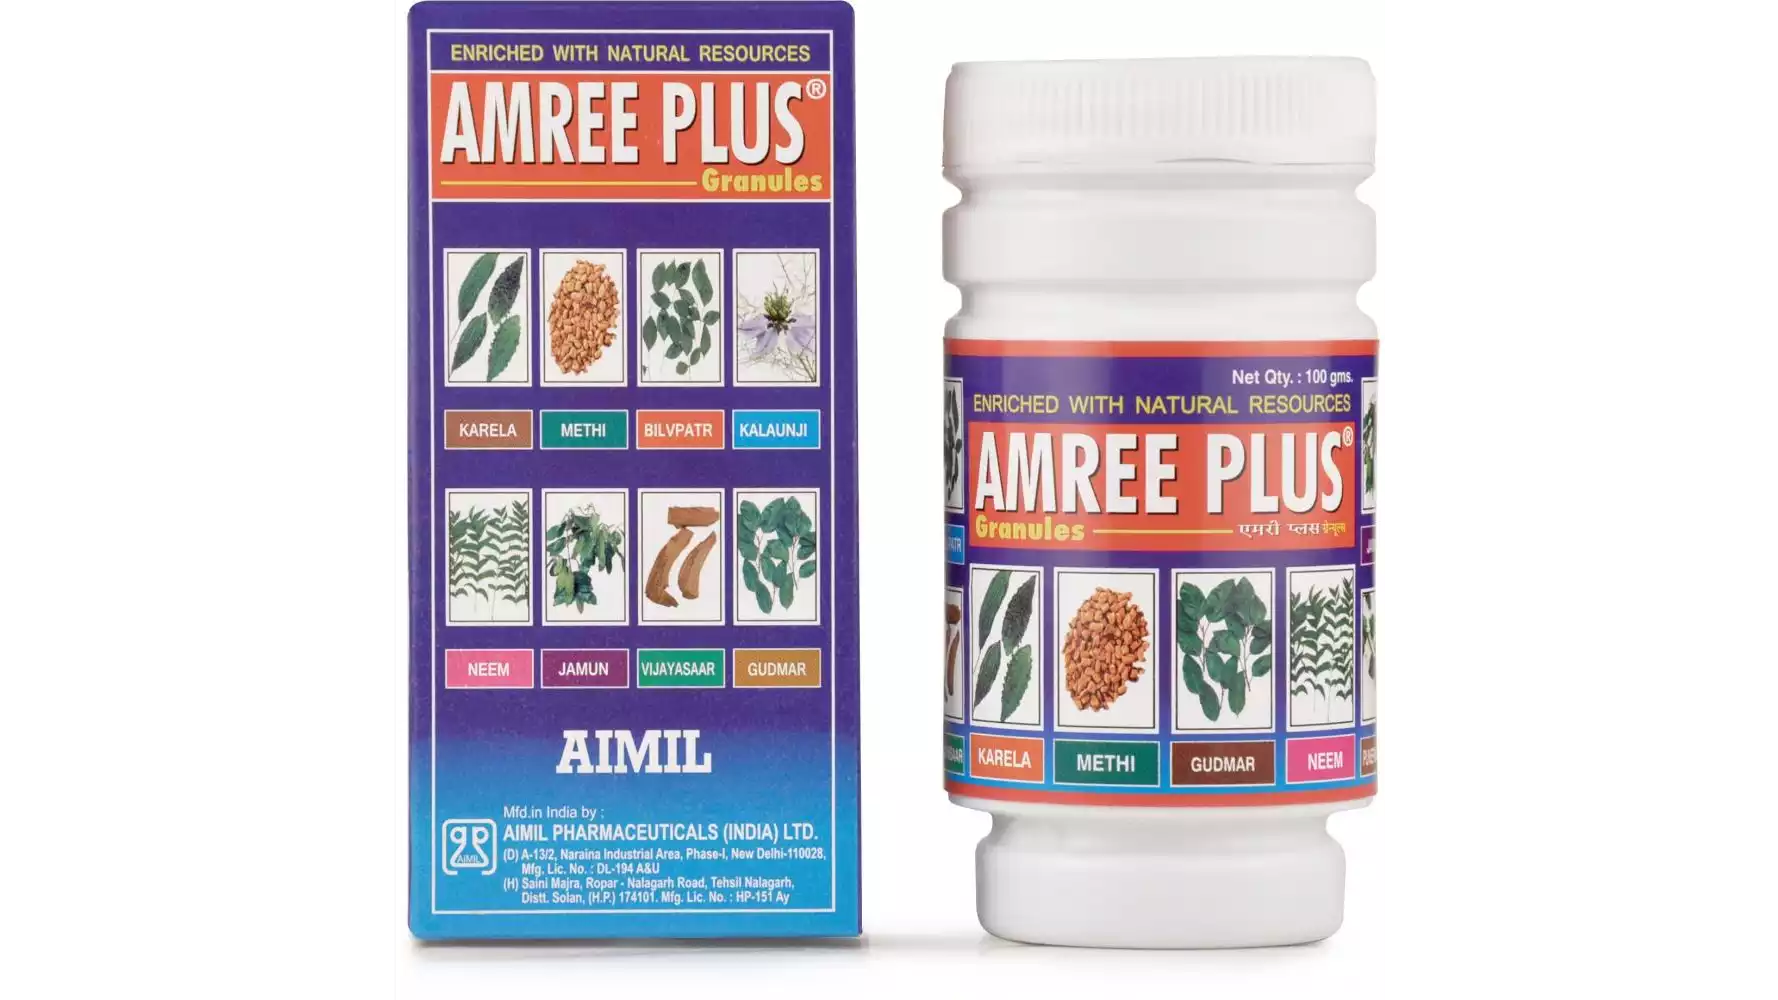 Aimil Amree Plus Granules (100g)